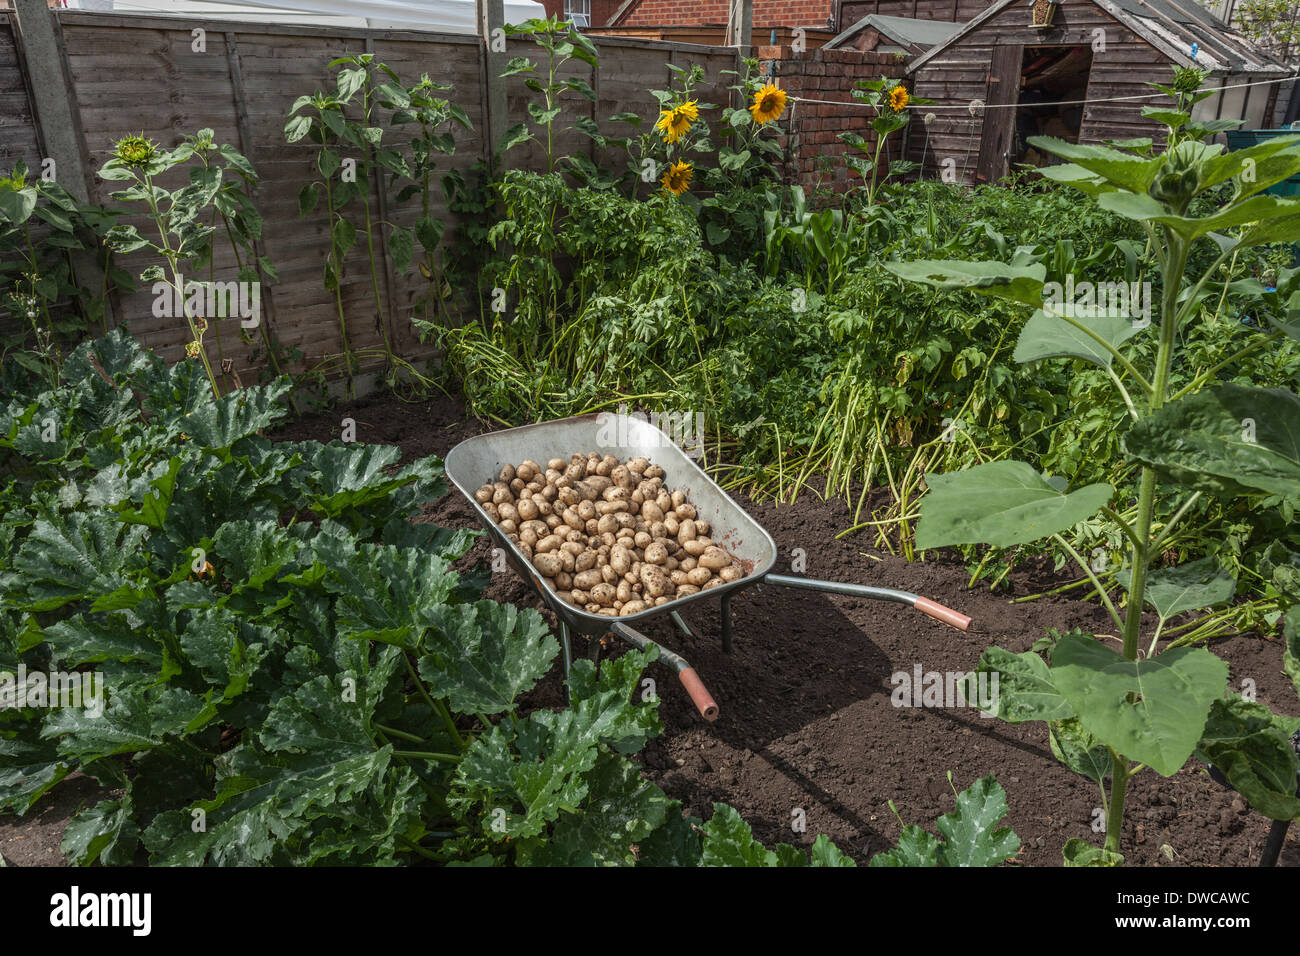 Wheelbarrow full of potatoes in garden Stock Photo